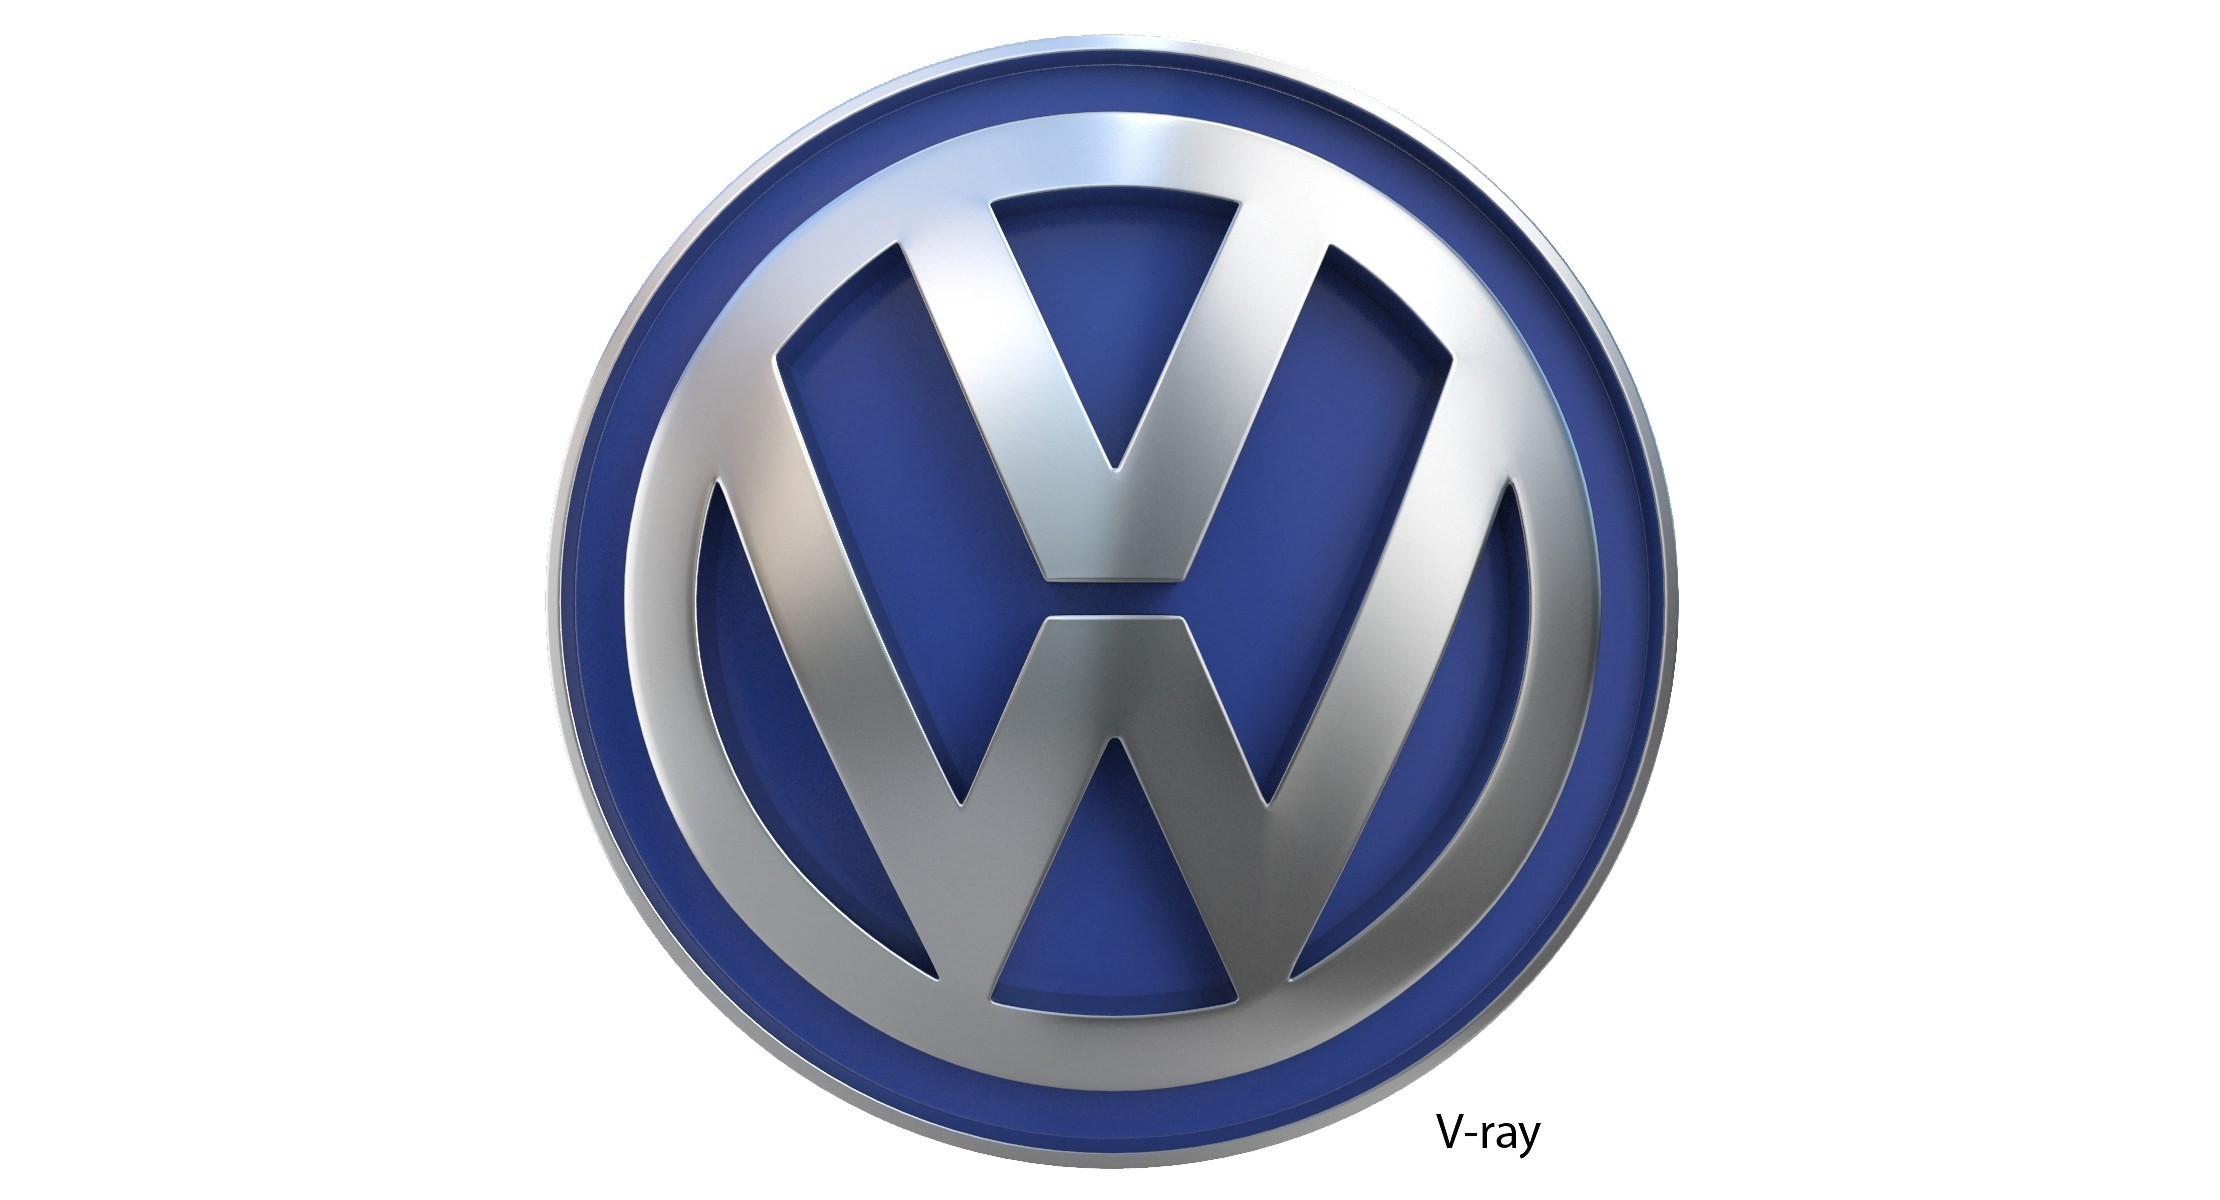 Volkswagen Logo Wallpaper (58+ images)